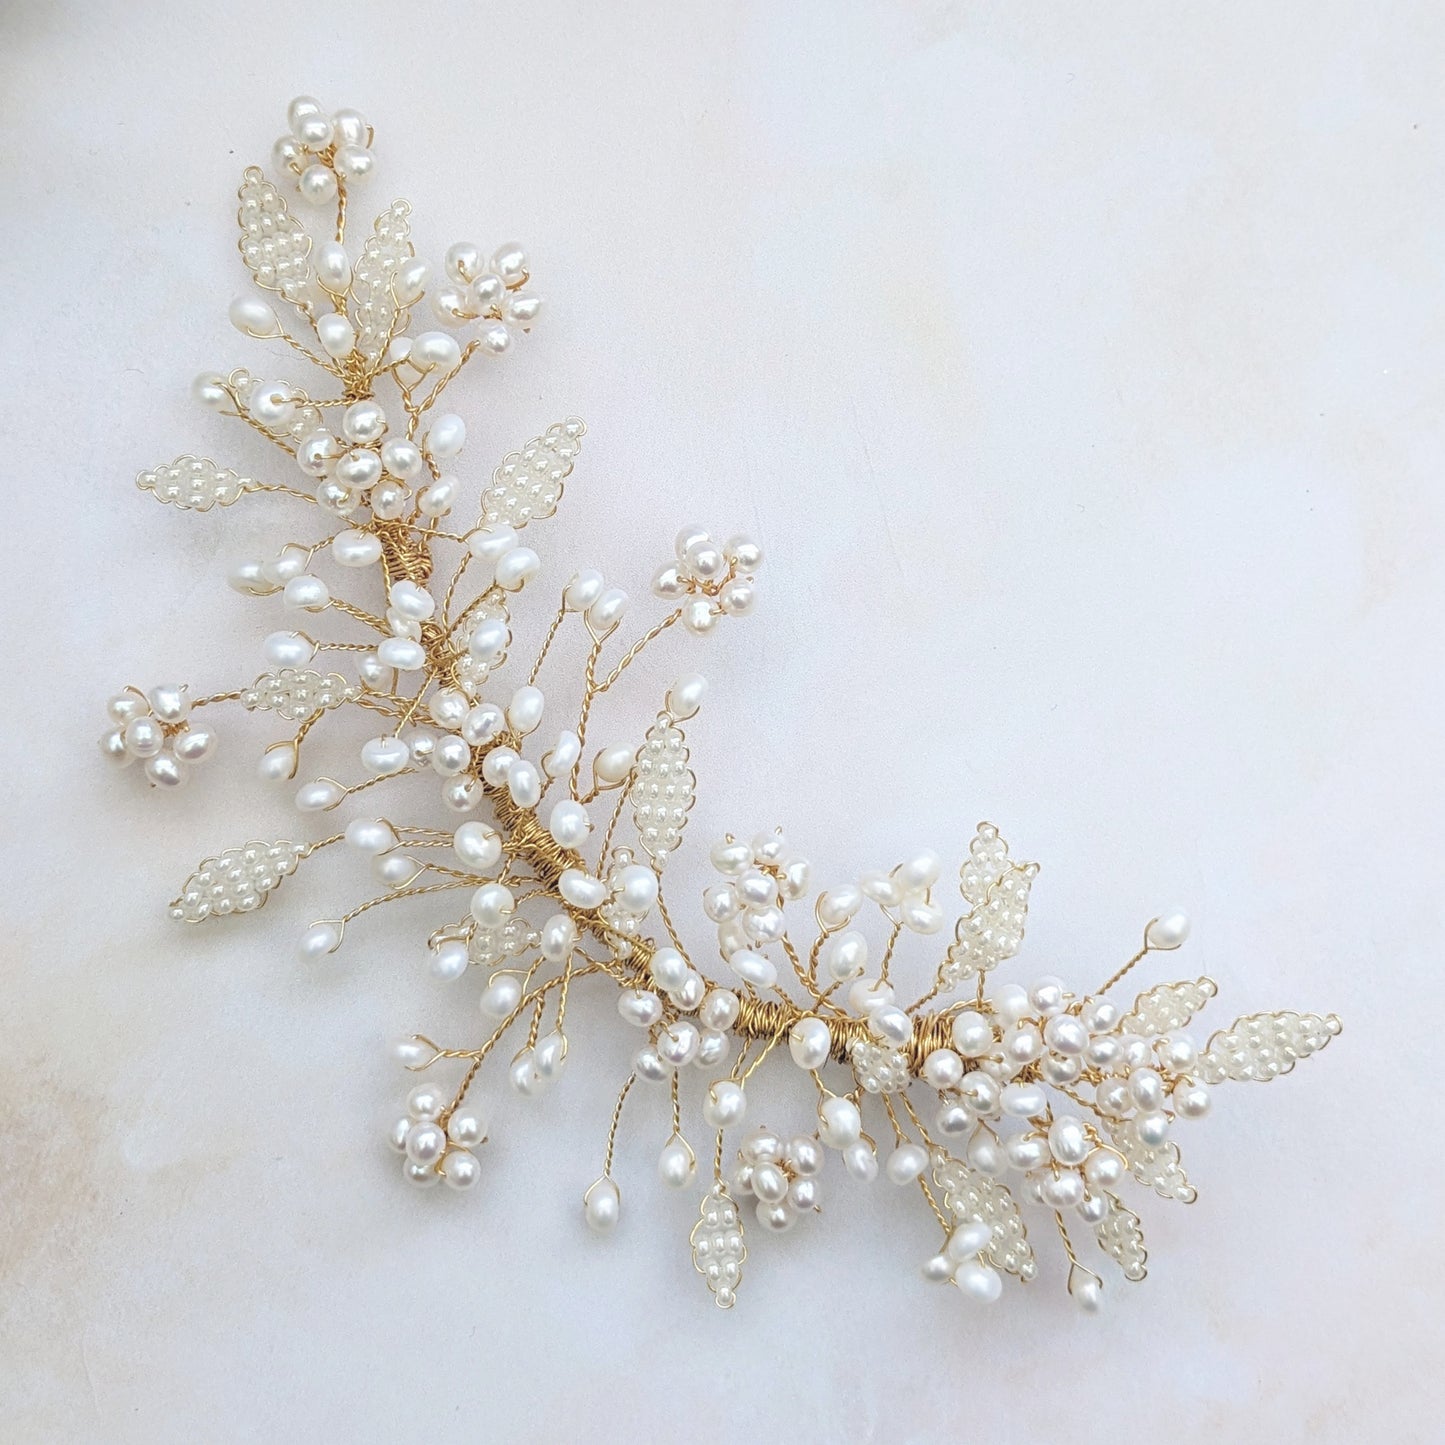 Freshwater Pearl flower headpiece for weddings - Susie Warner